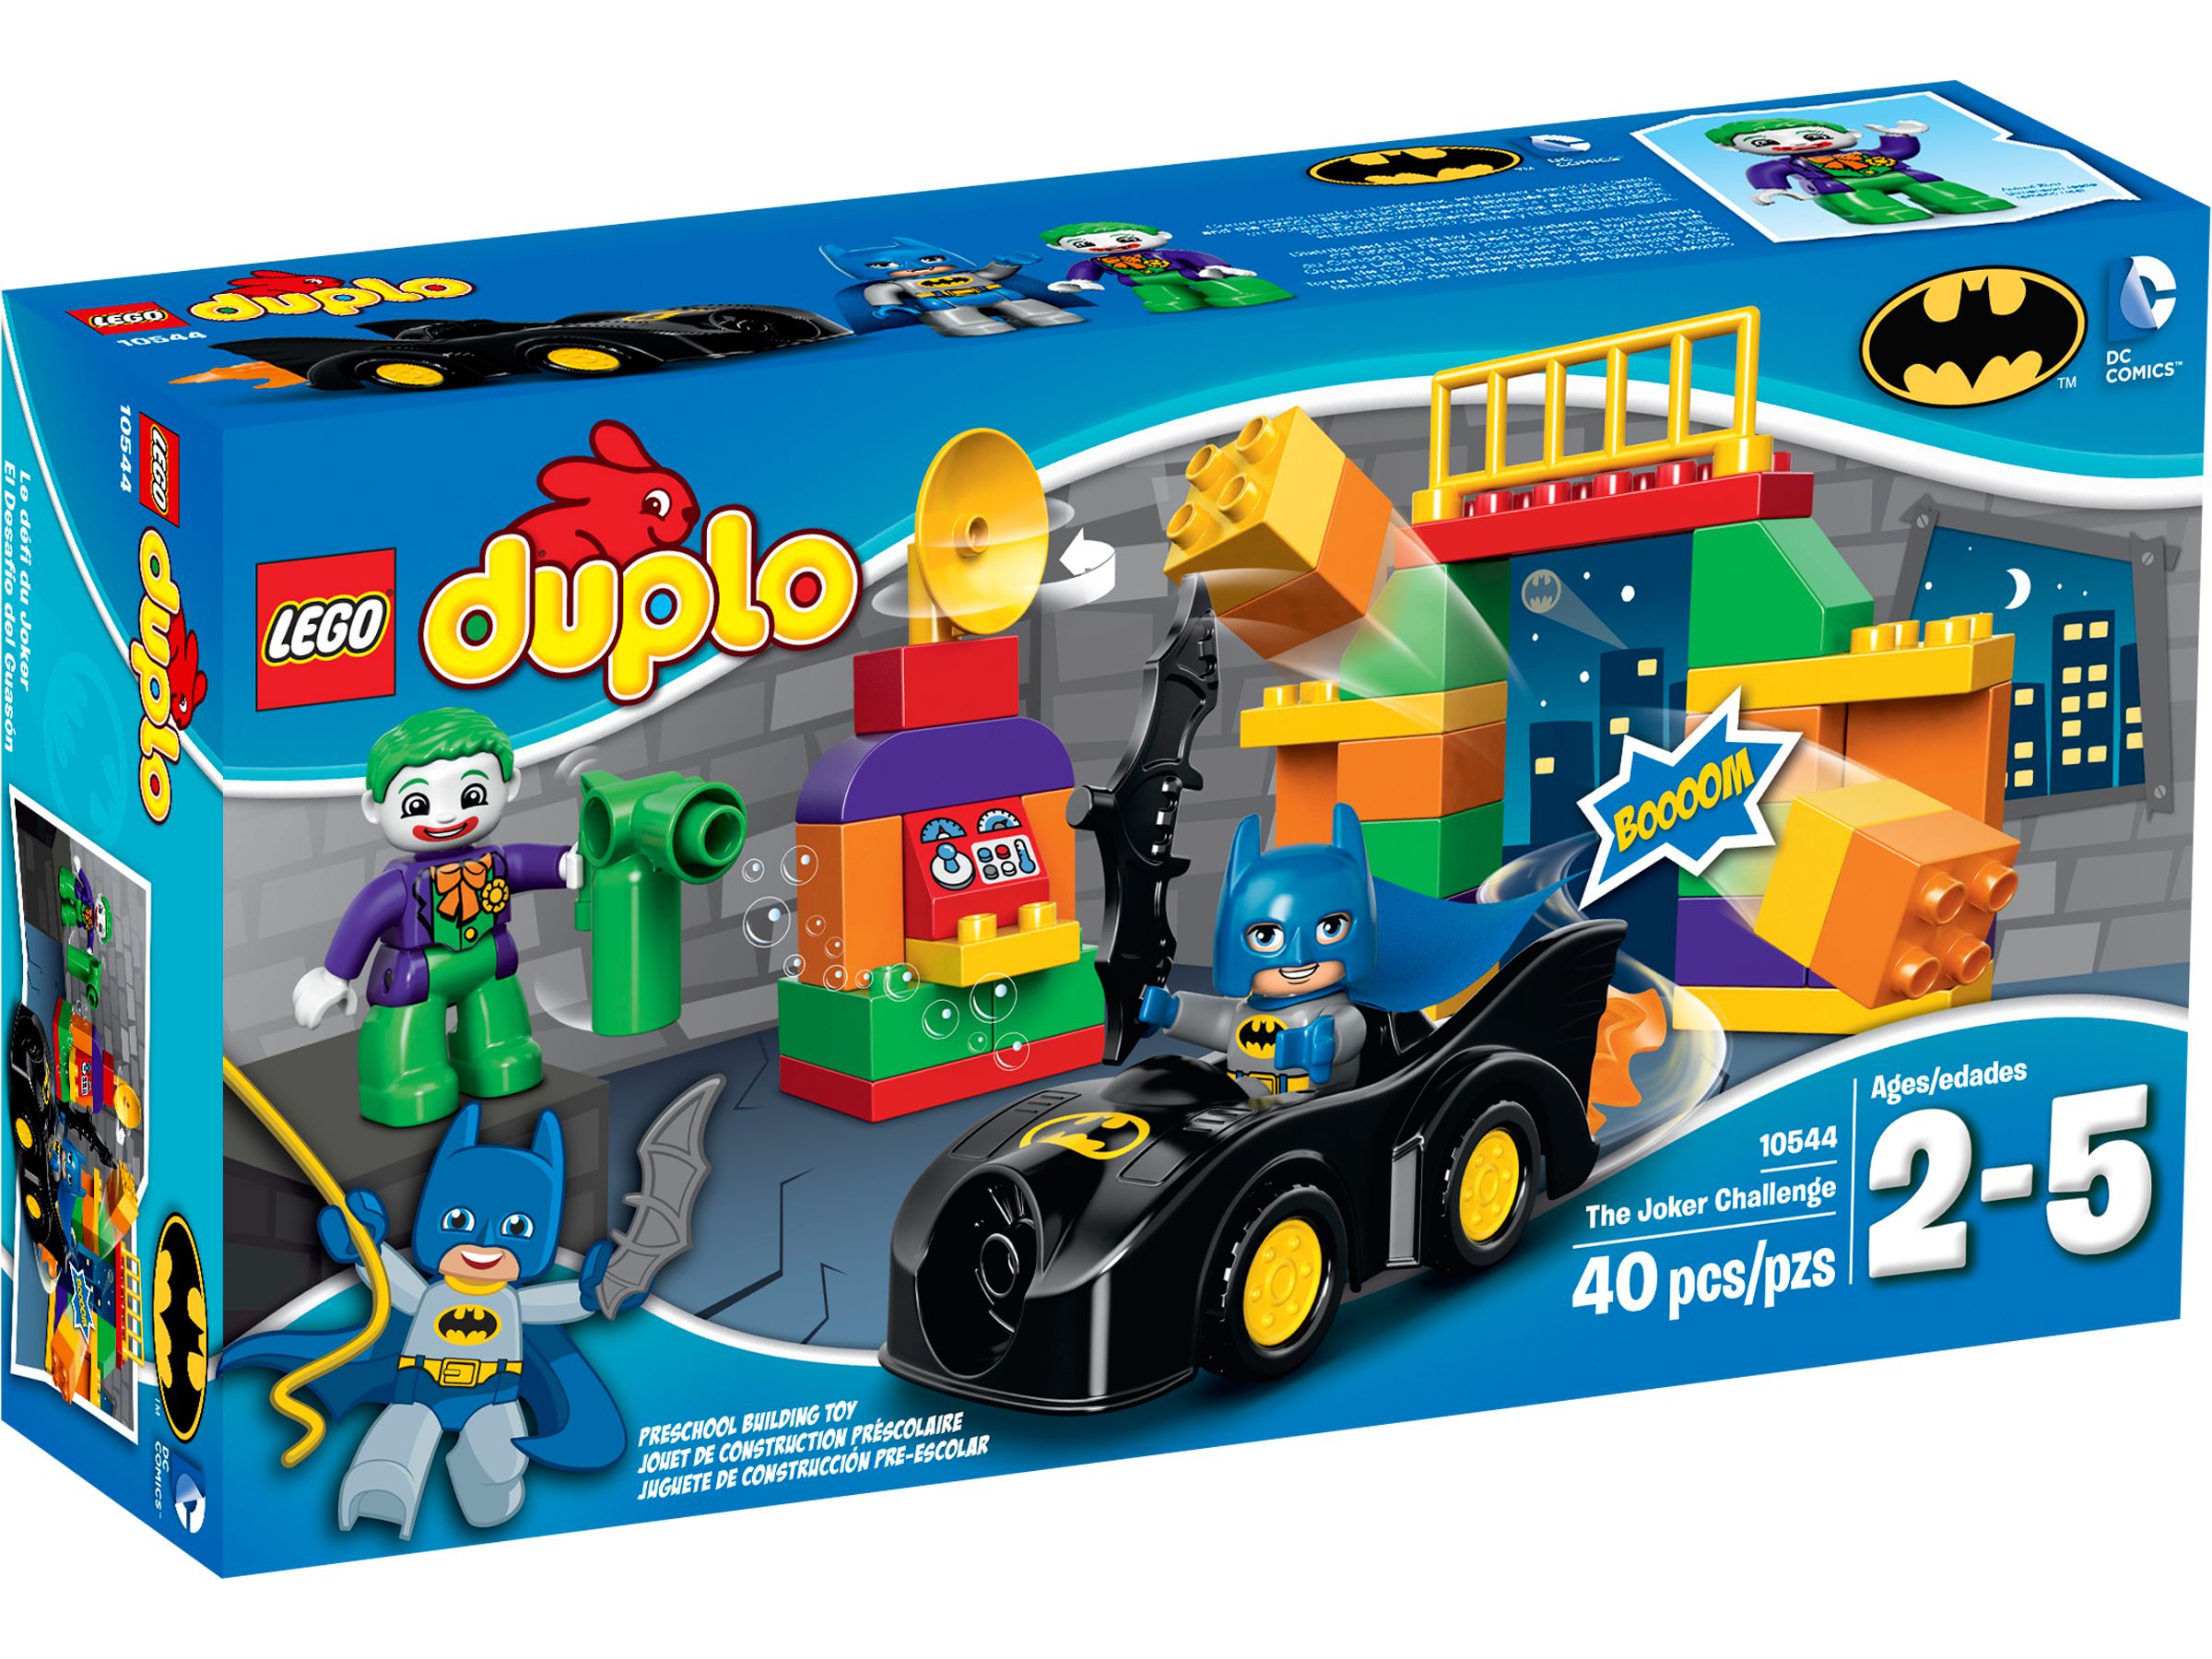 LEGO Duplo 10544 Jokers Versteck LEGO_10544_alt1.jpg